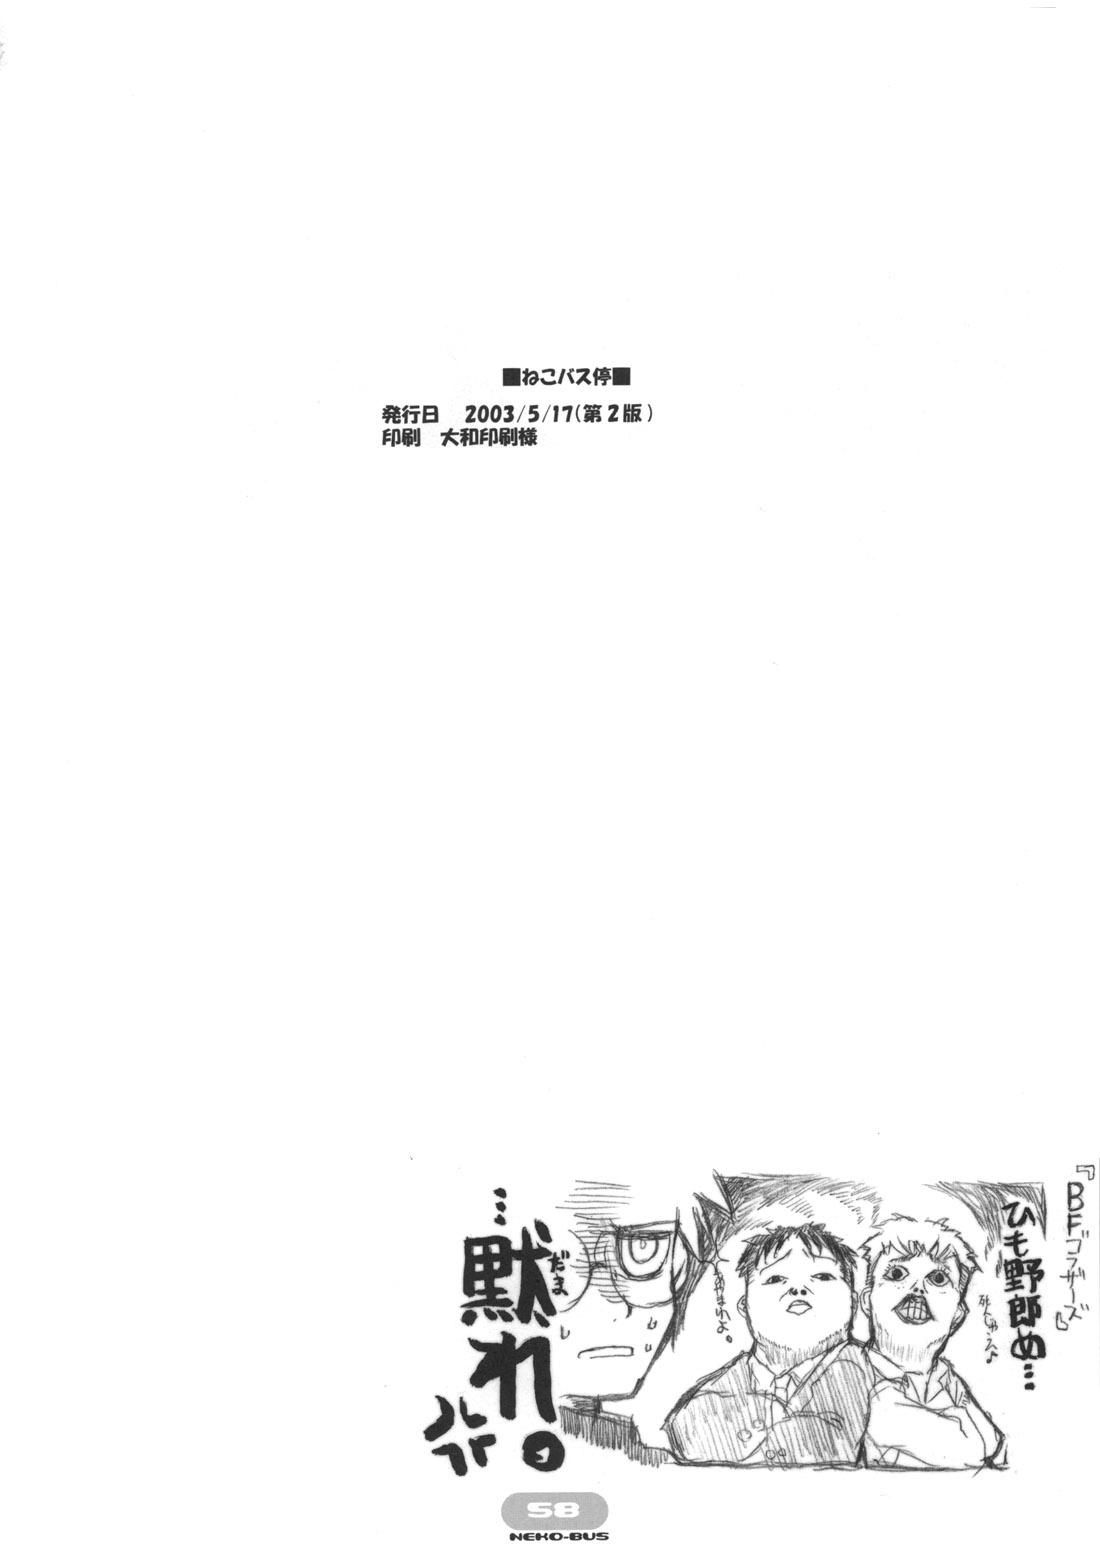 Stripping Neko-bus Tei no Hon vol.5 - Tsukihime Ejaculations - Page 58